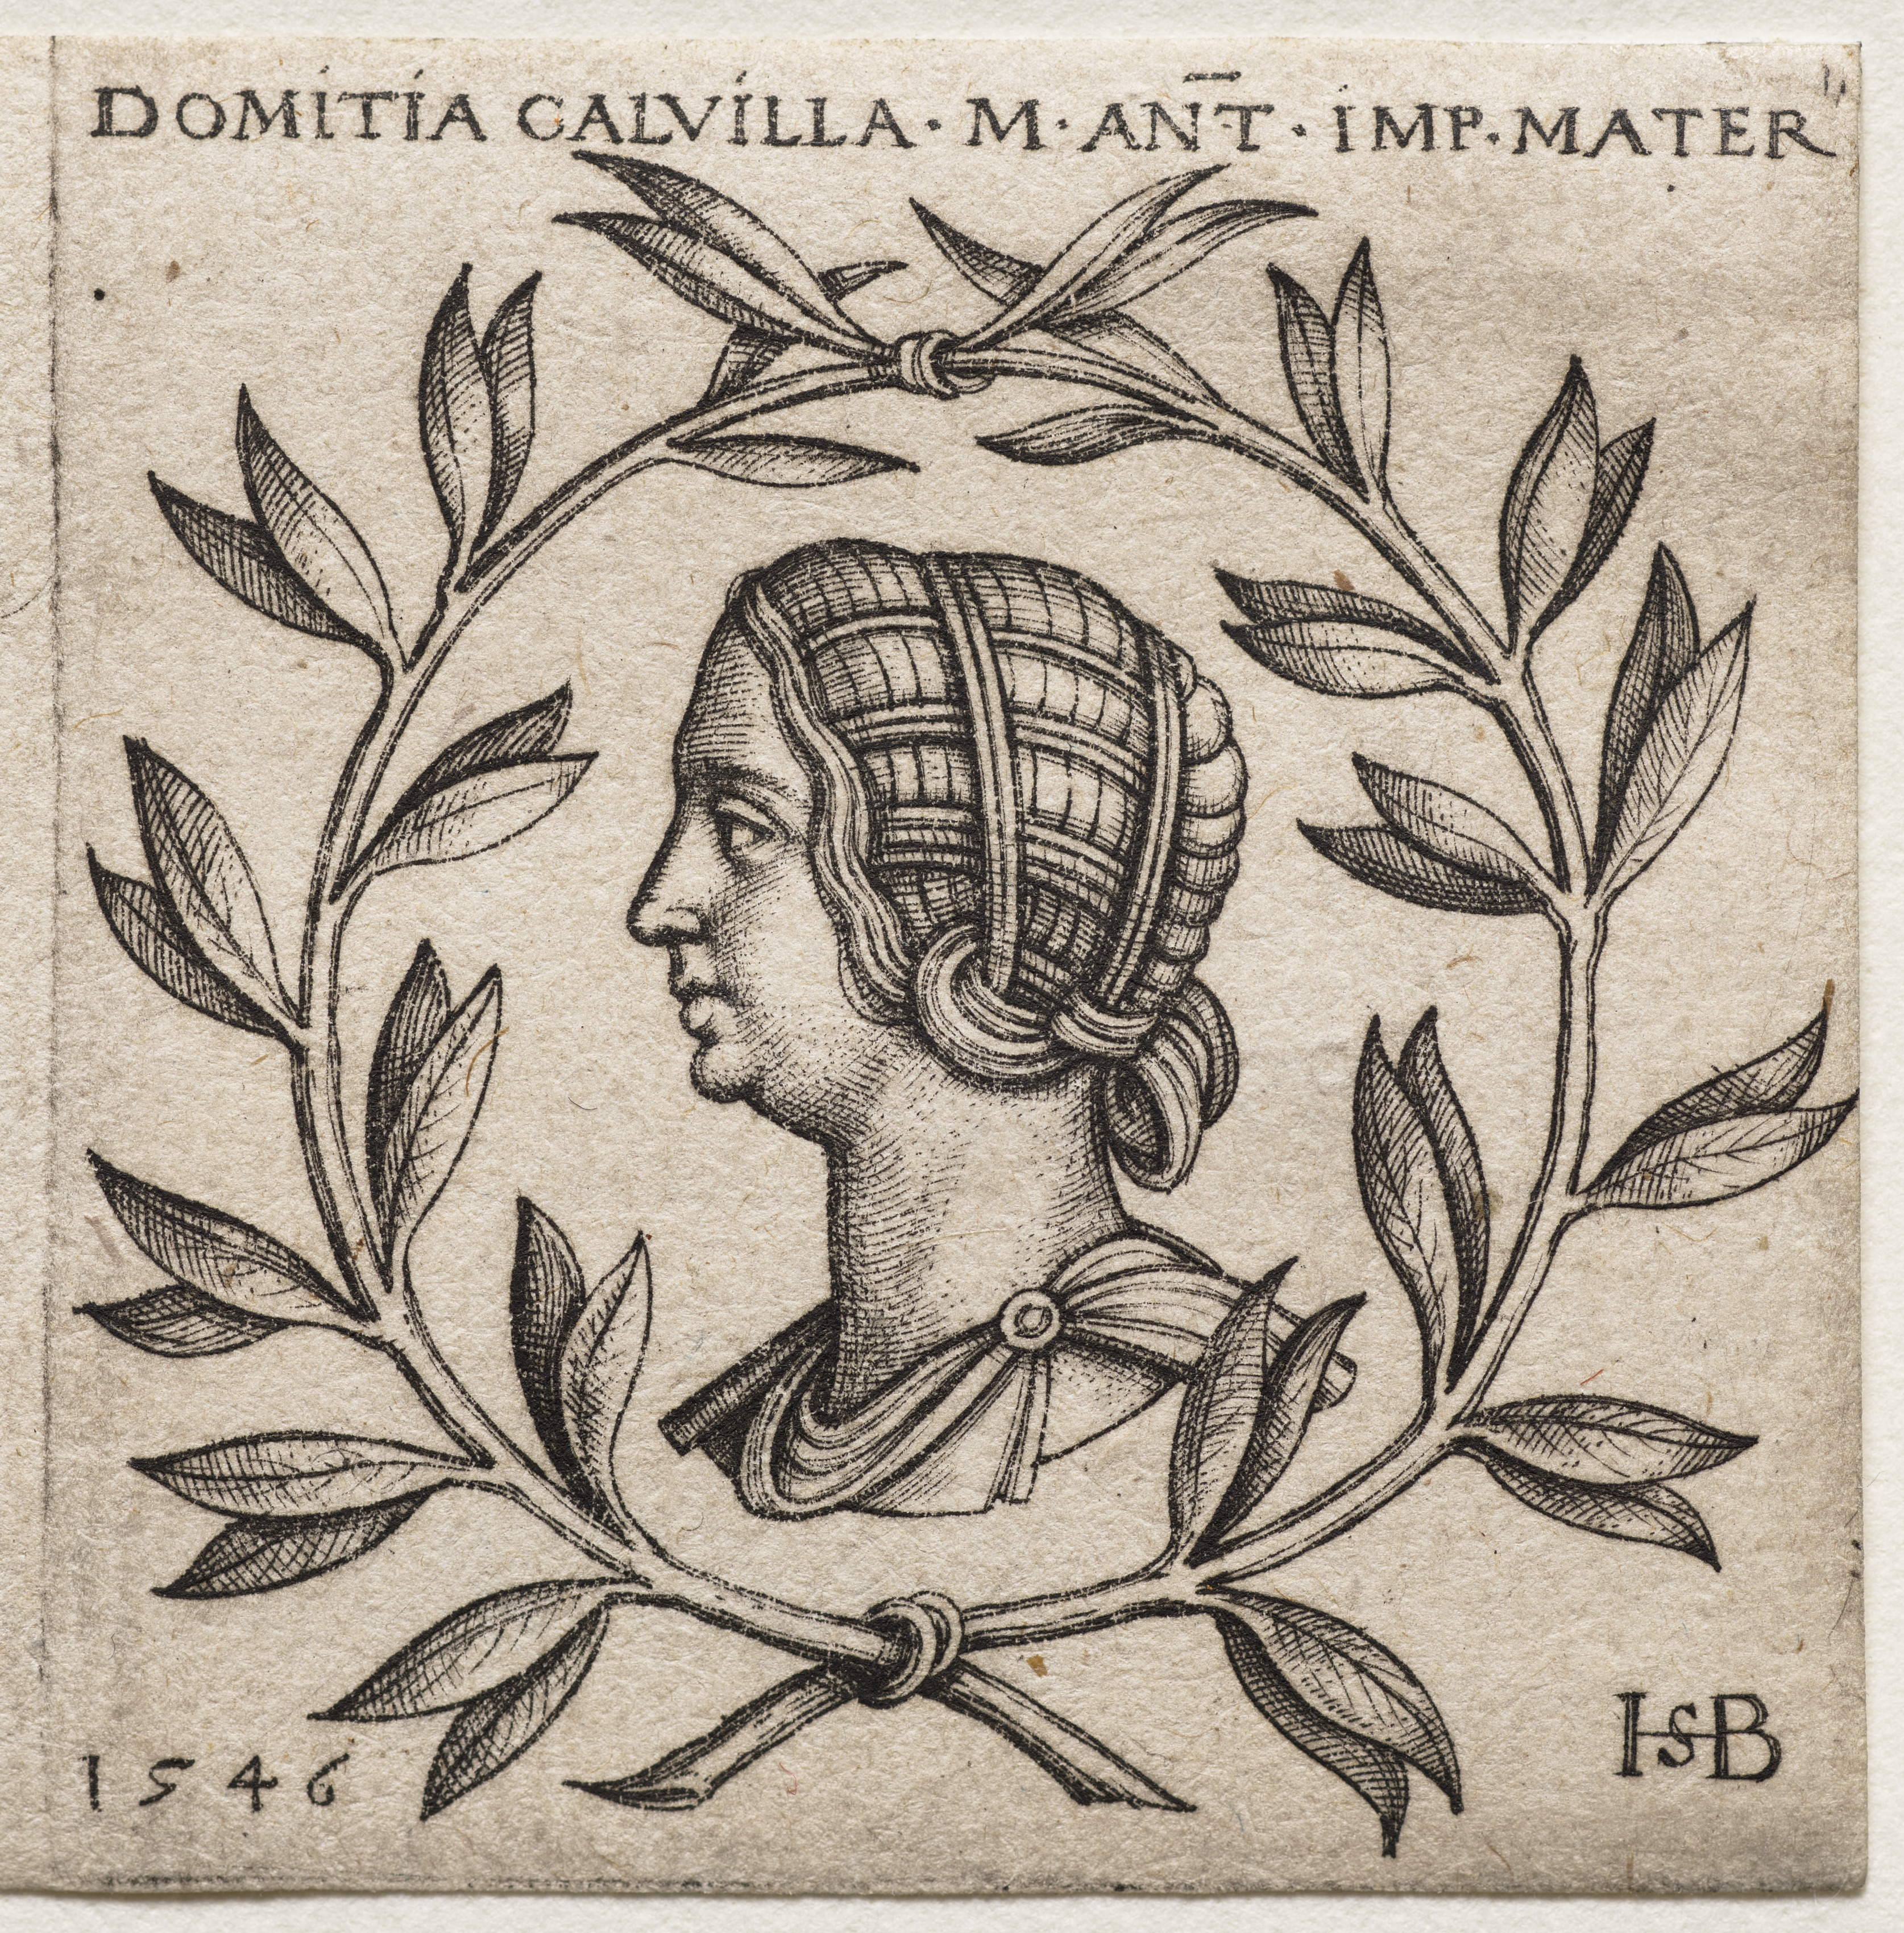 Bust of Domitia Calvilla